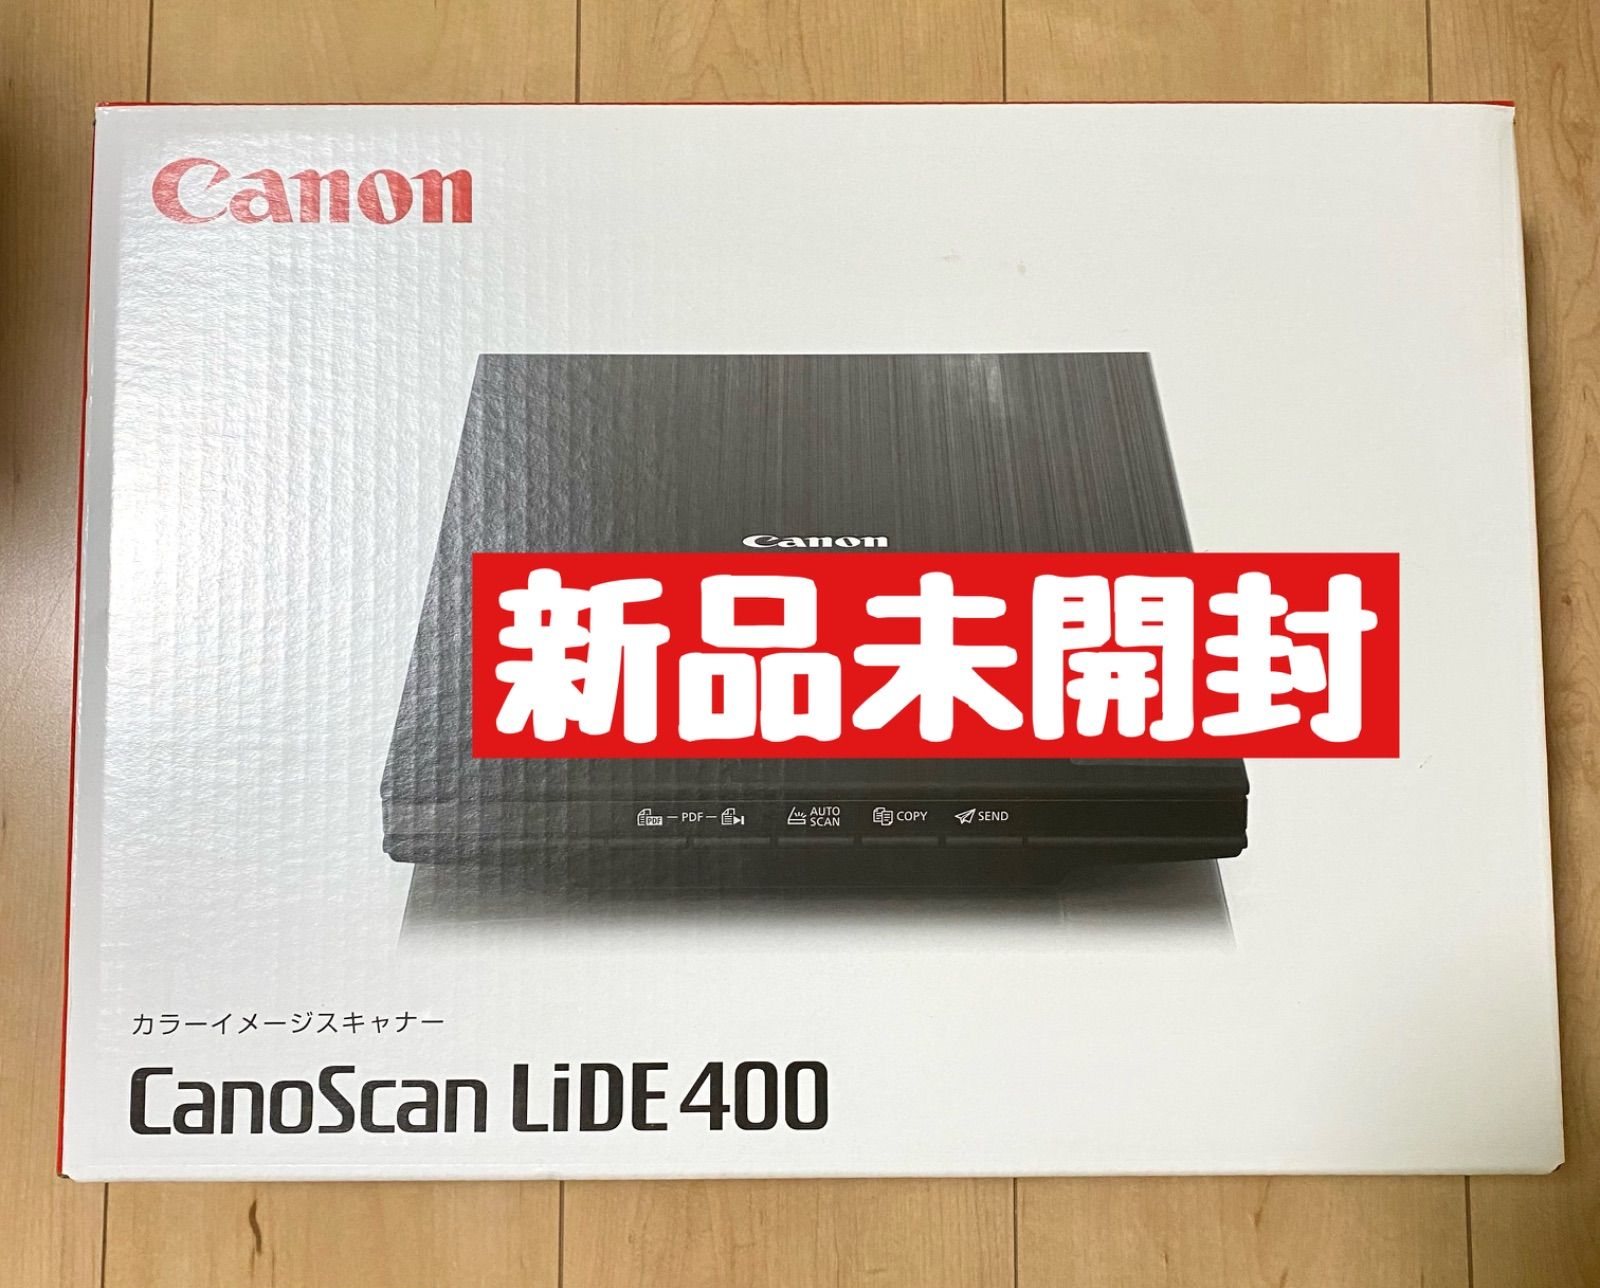 Canon スキャナー フラットベッド CANOSCAN LIDE 400 ワイエス商店 メルカリ